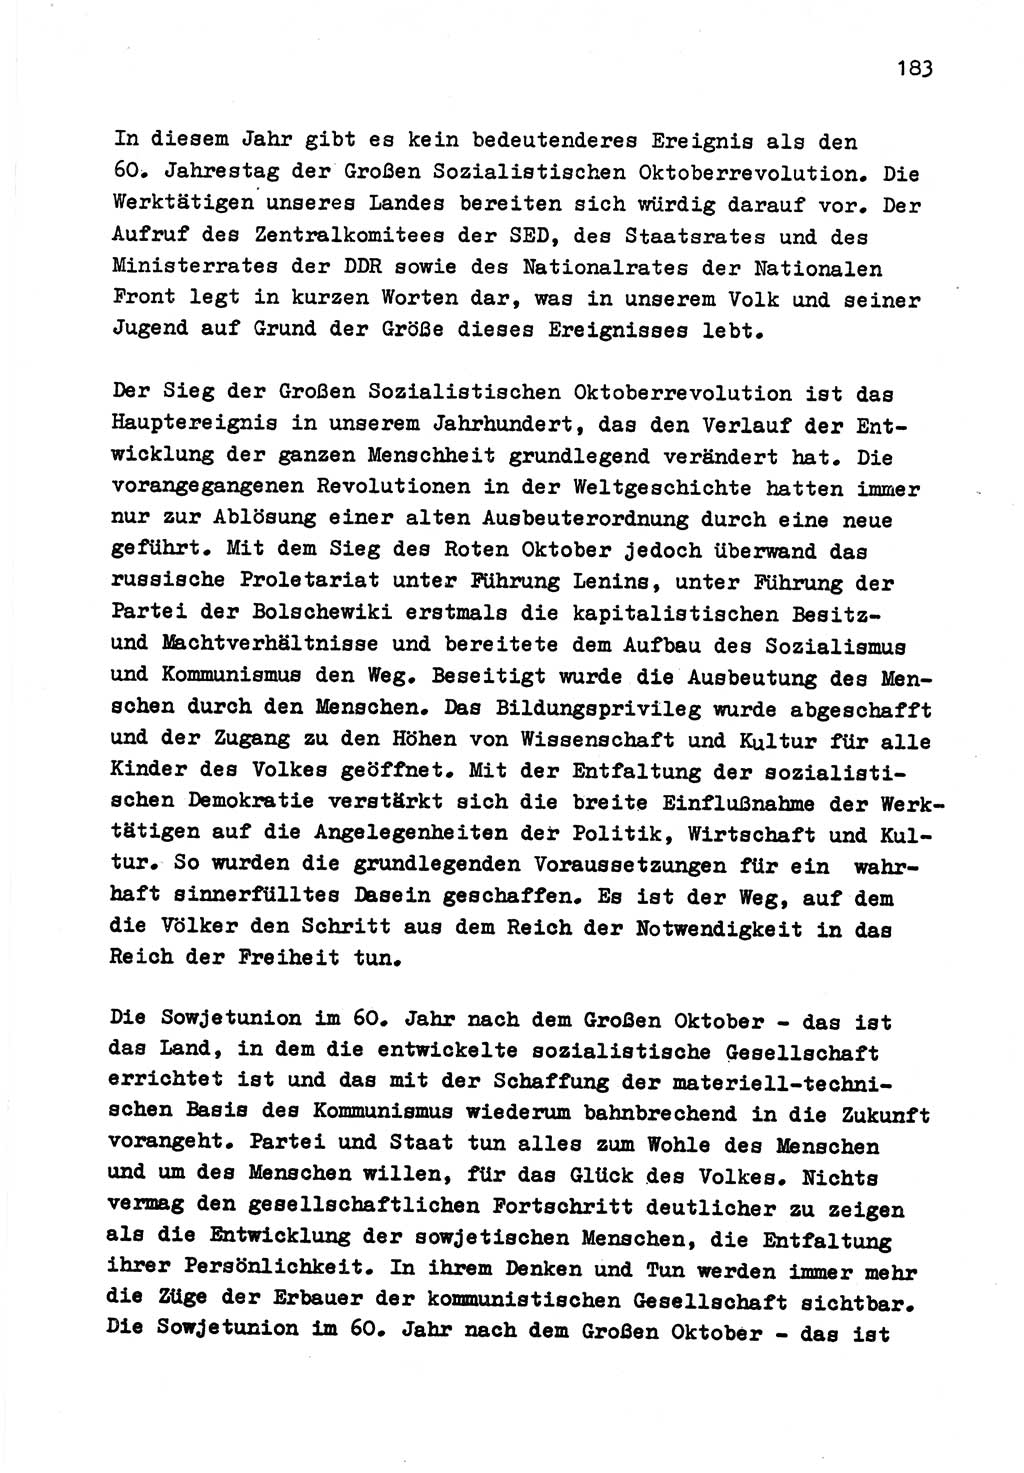 Zu Fragen der Parteiarbeit [Sozialistische Einheitspartei Deutschlands (SED) Deutsche Demokratische Republik (DDR)] 1979, Seite 183 (Fr. PA SED DDR 1979, S. 183)